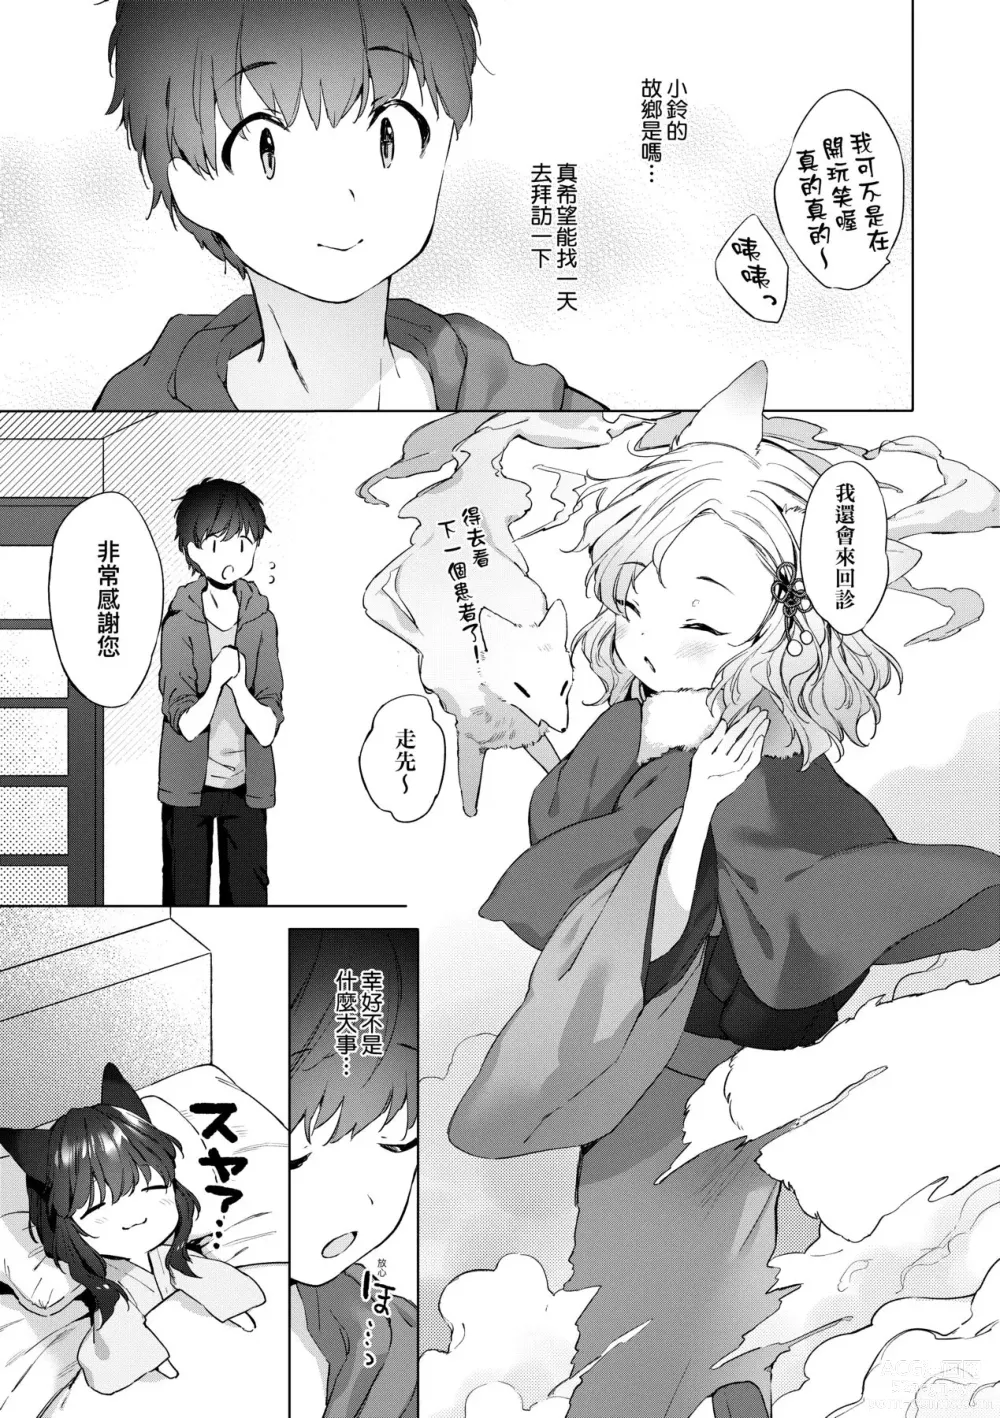 Page 36 of manga Utsushiyo to Osanaduma (decensored)